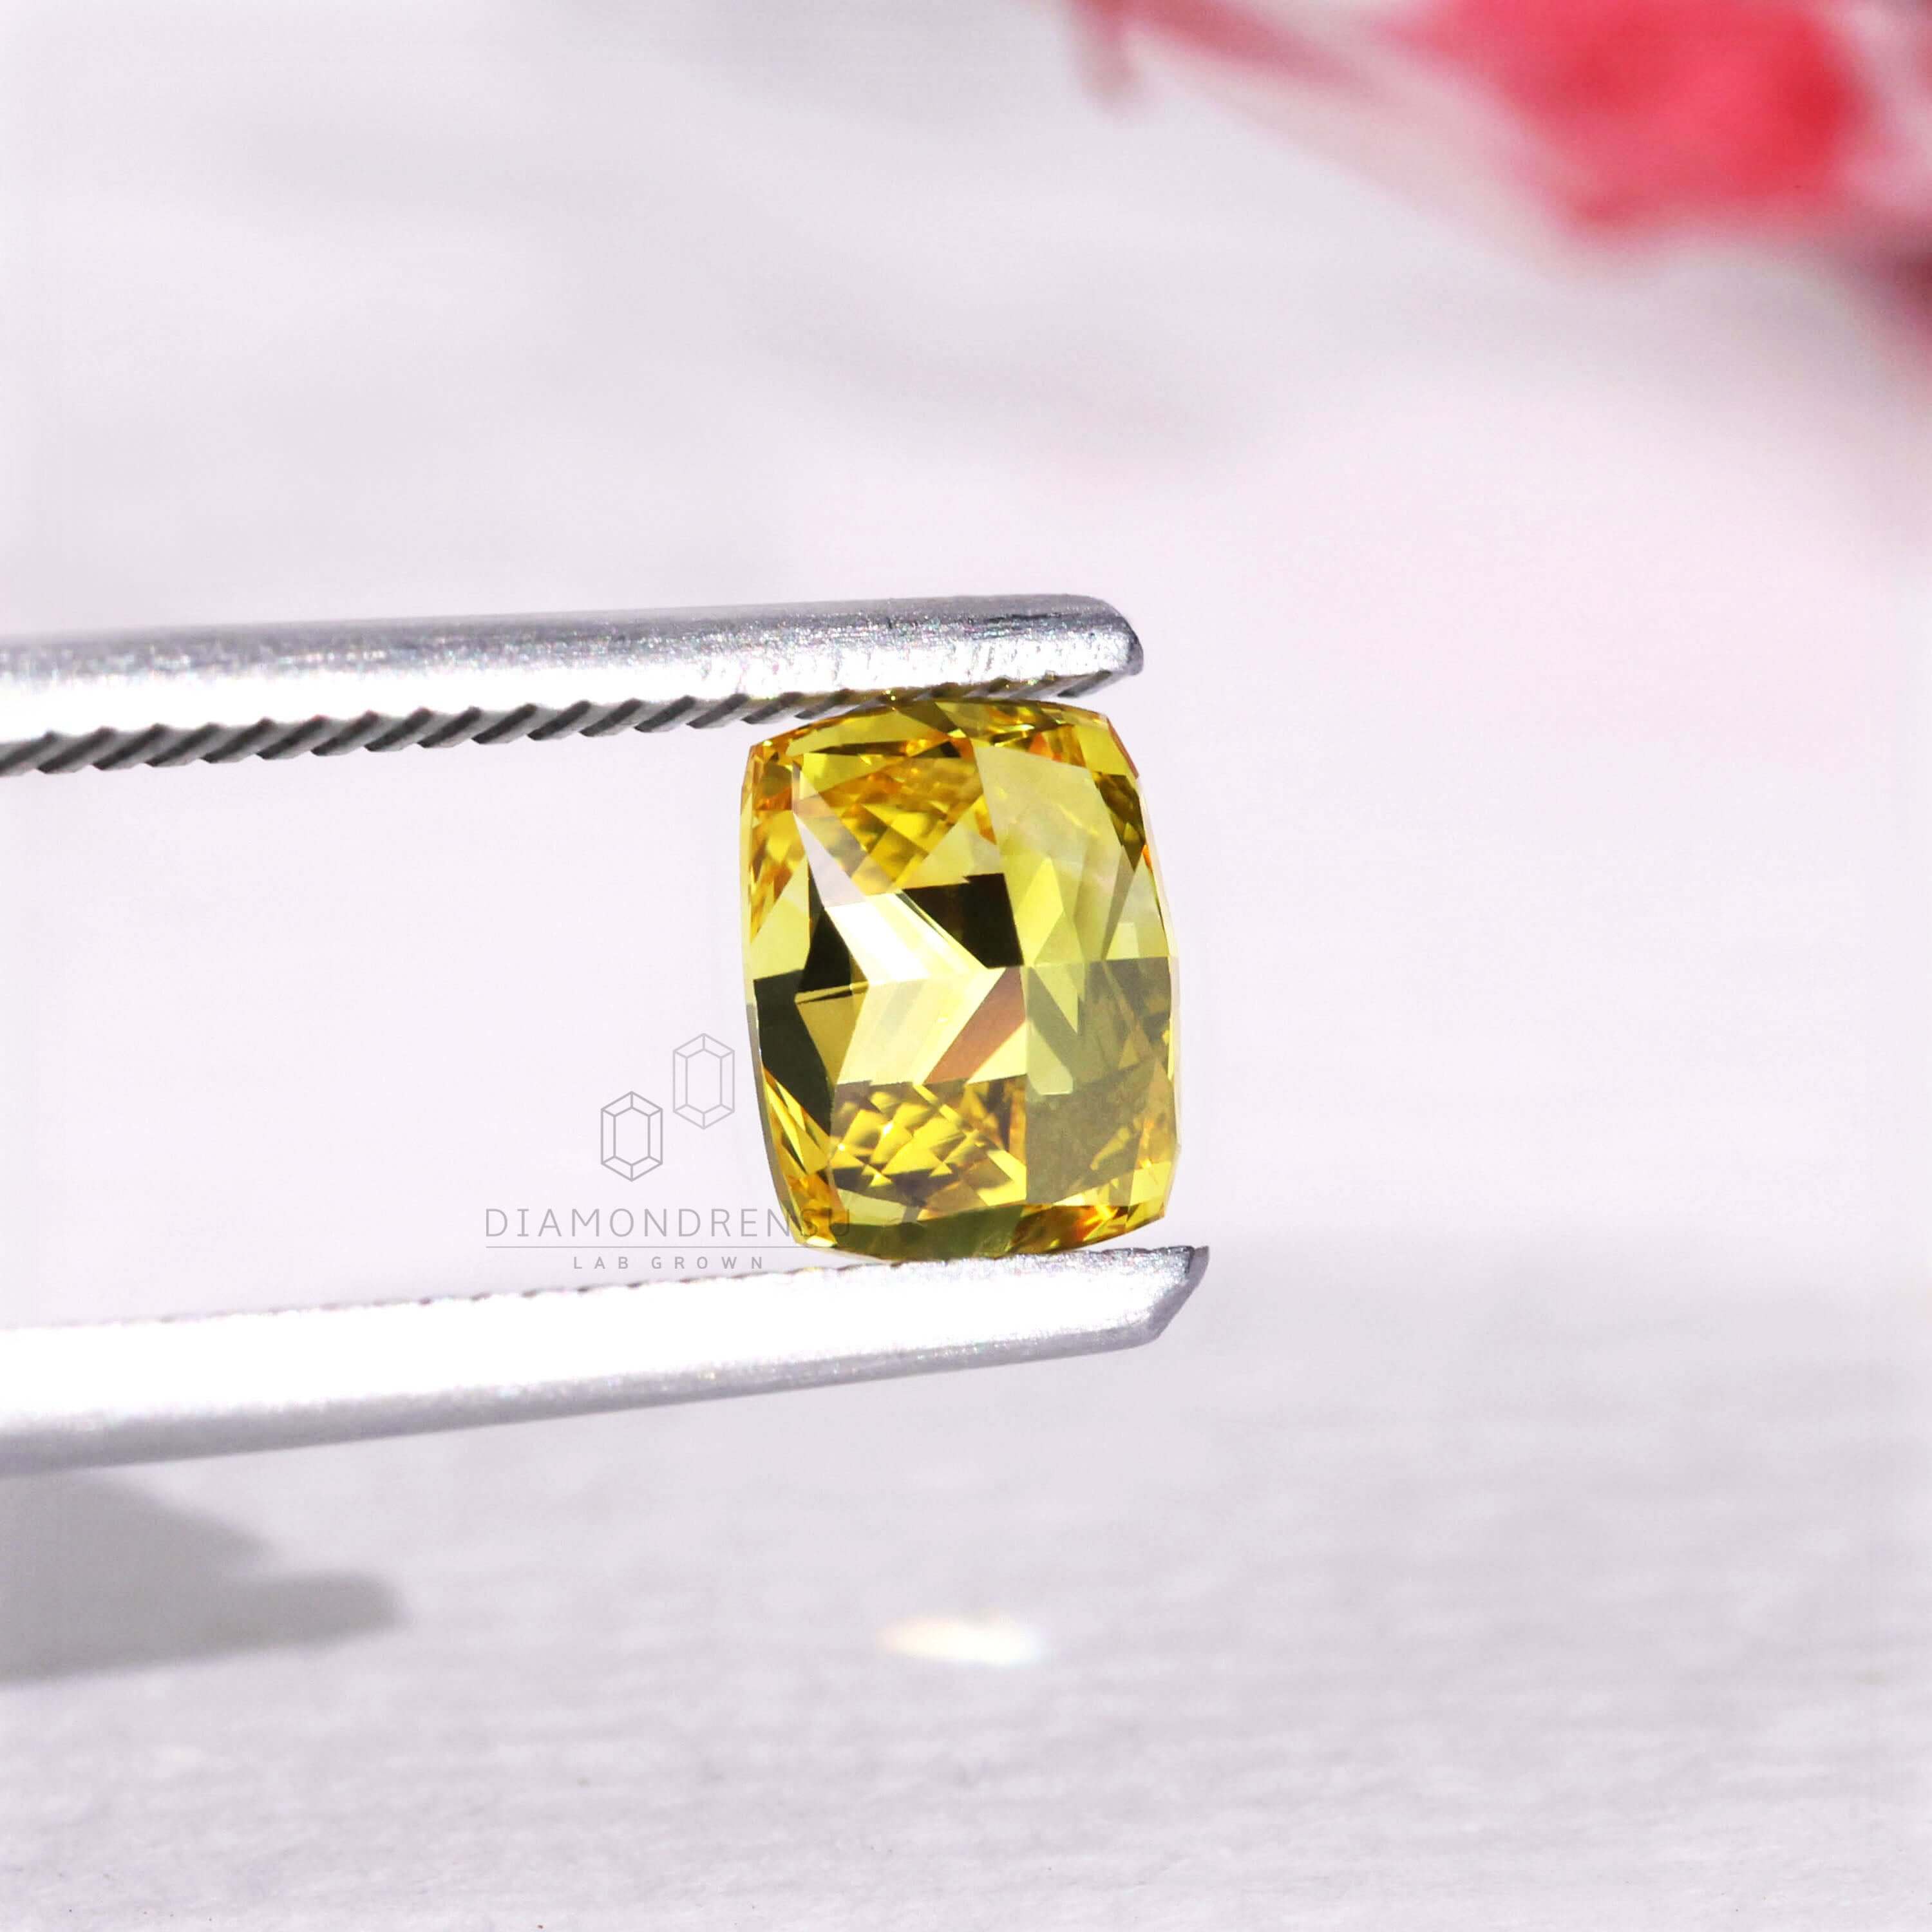 cushion lab created diamond - diamondrensu